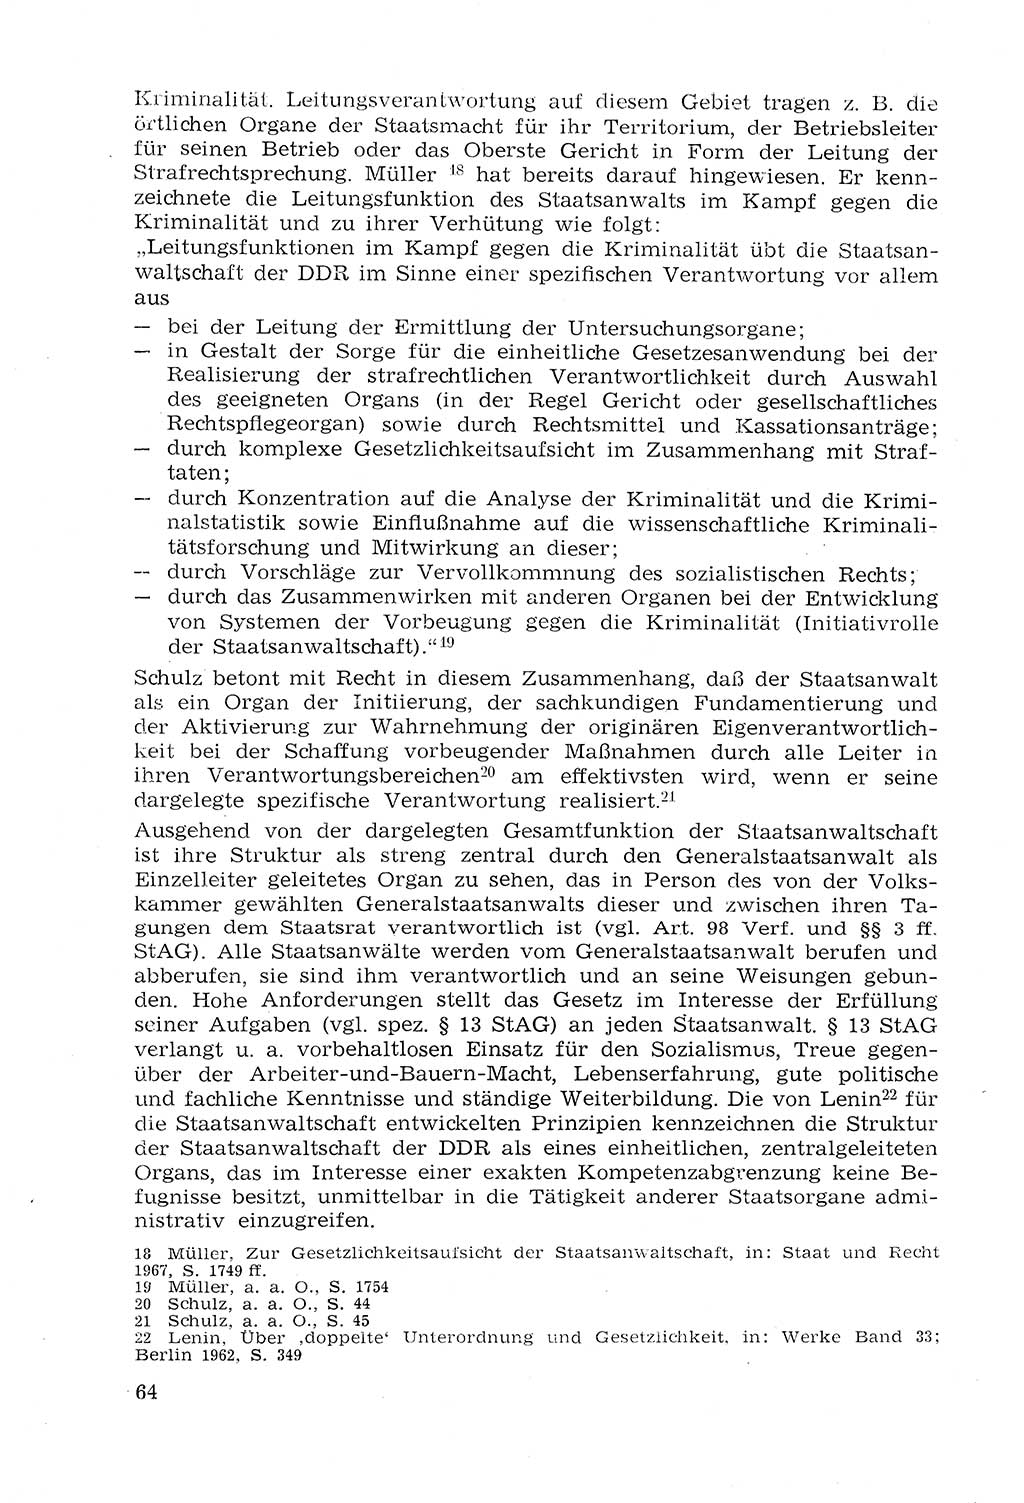 Strafprozeßrecht der DDR (Deutsche Demokratische Republik), Lehrmaterial 1969, Seite 64 (Strafprozeßr. DDR Lehrmat. 1969, S. 64)